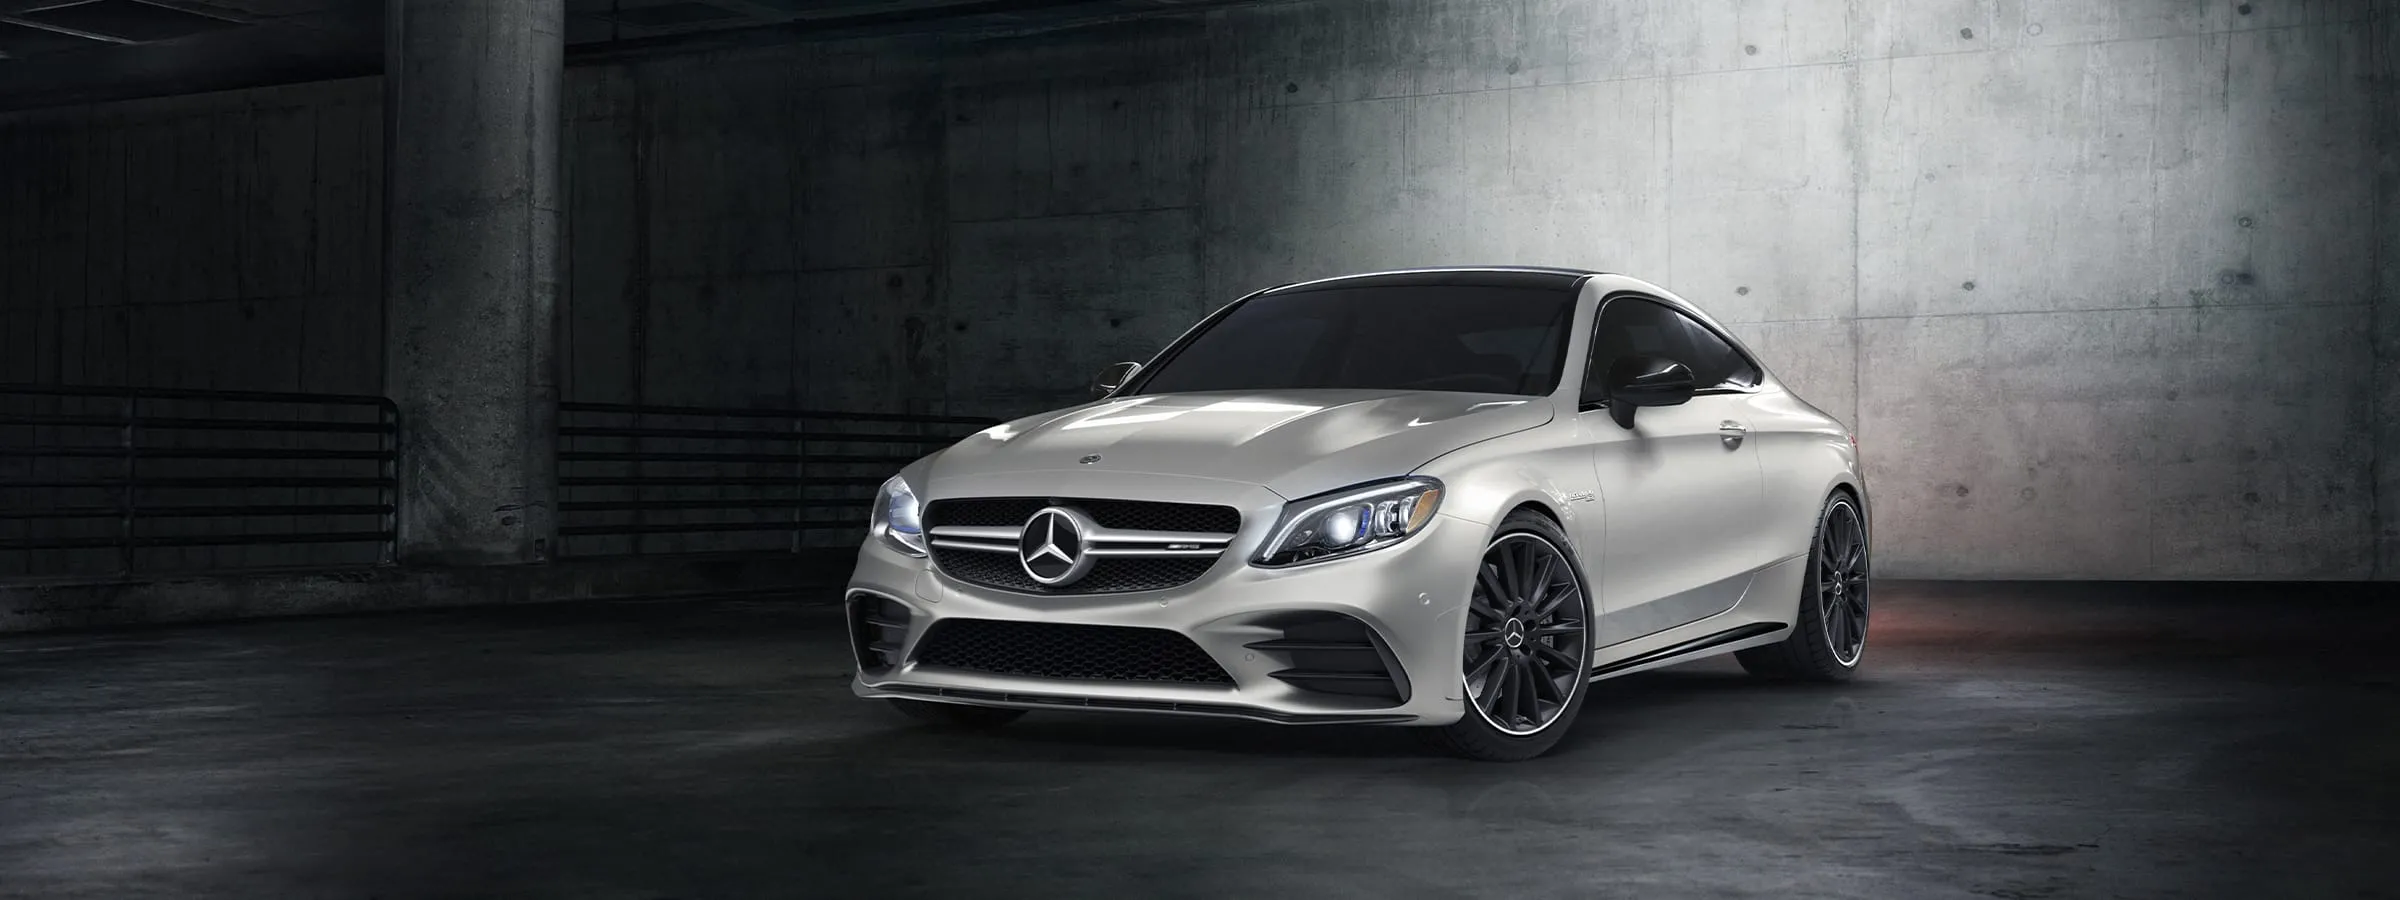 Mercedes-Benz Lineup - Latest Models & Discontinued Models